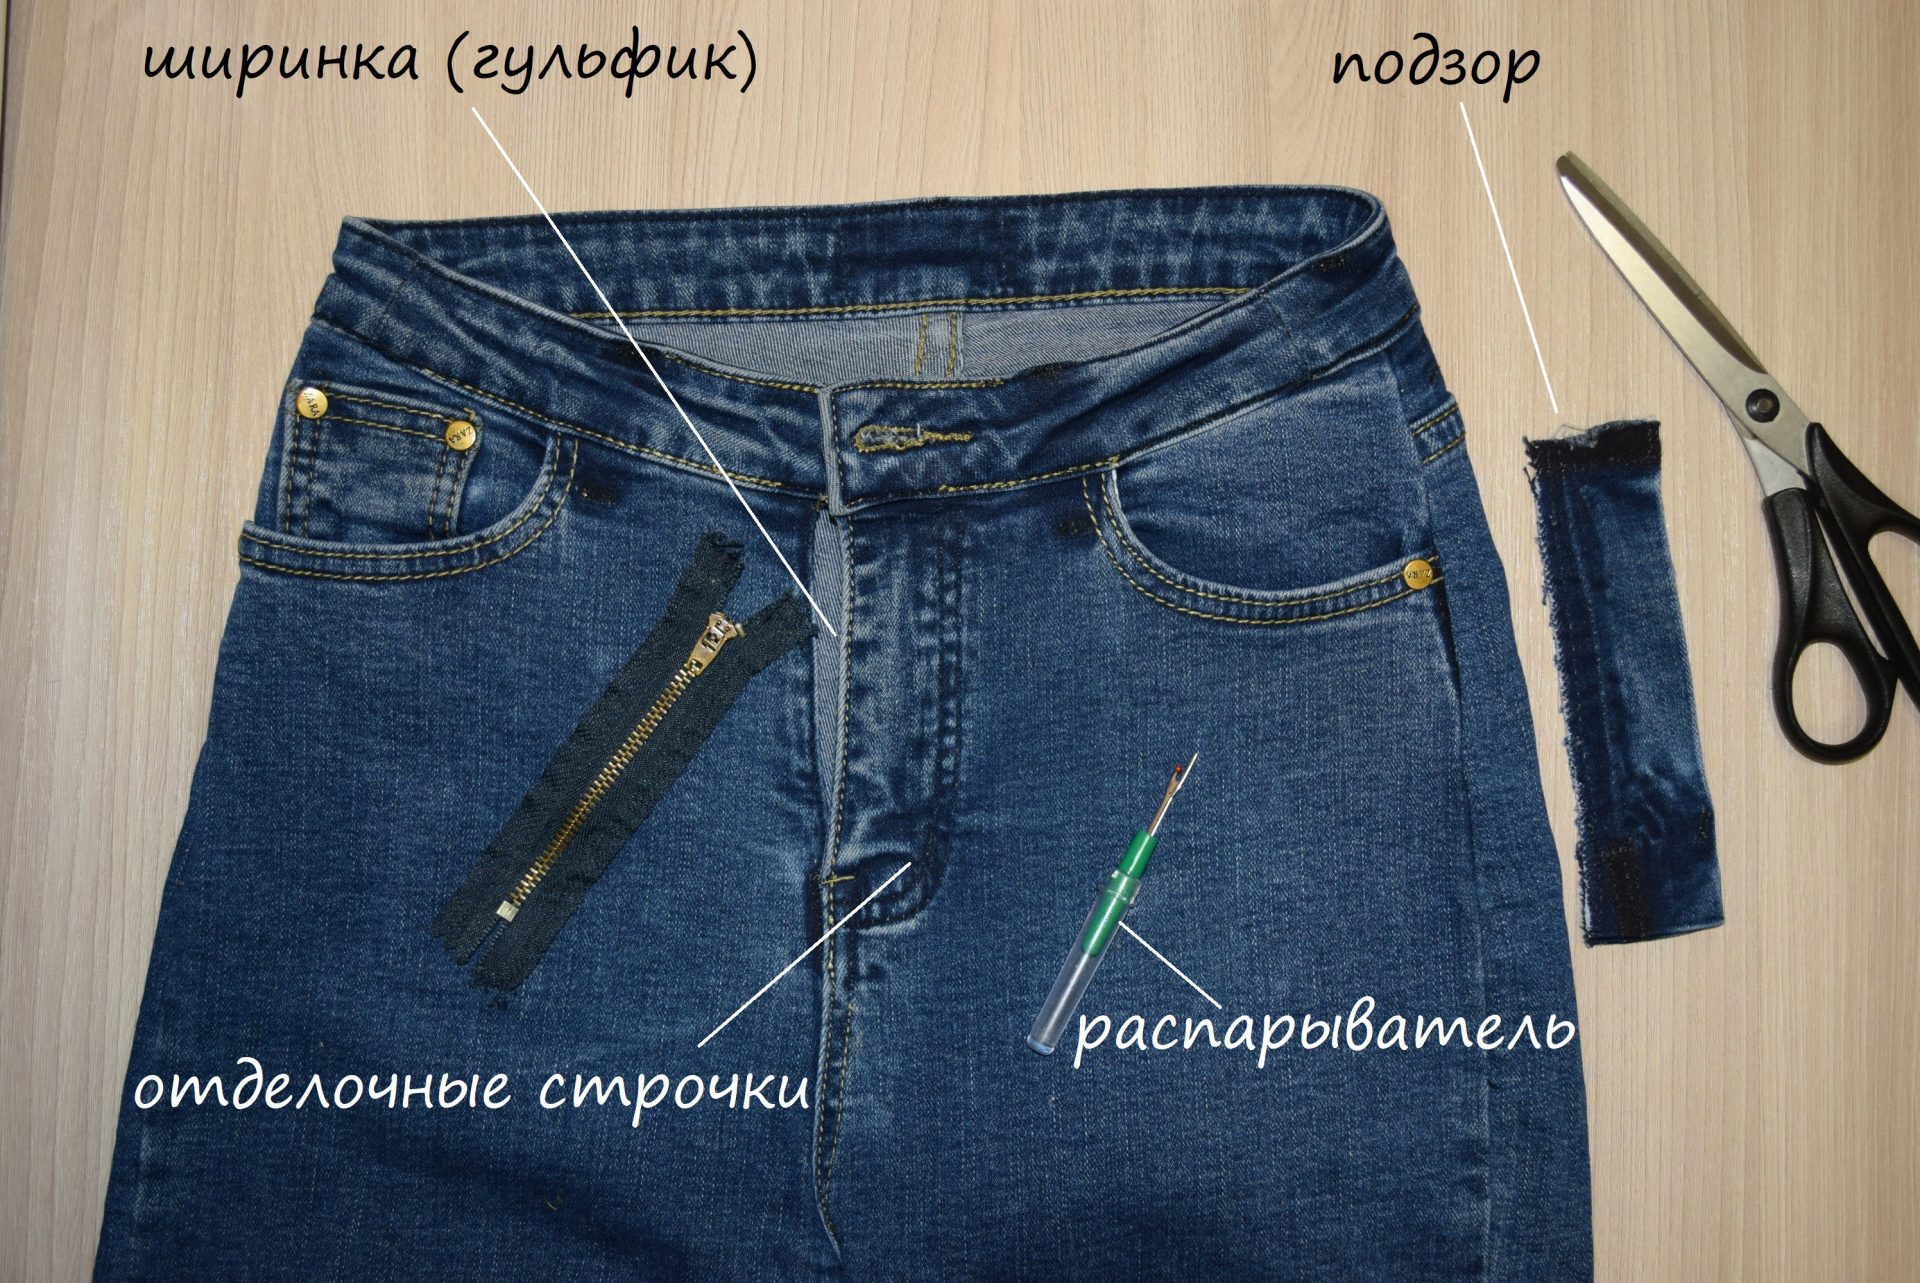 Обработка гульфика на джинсах